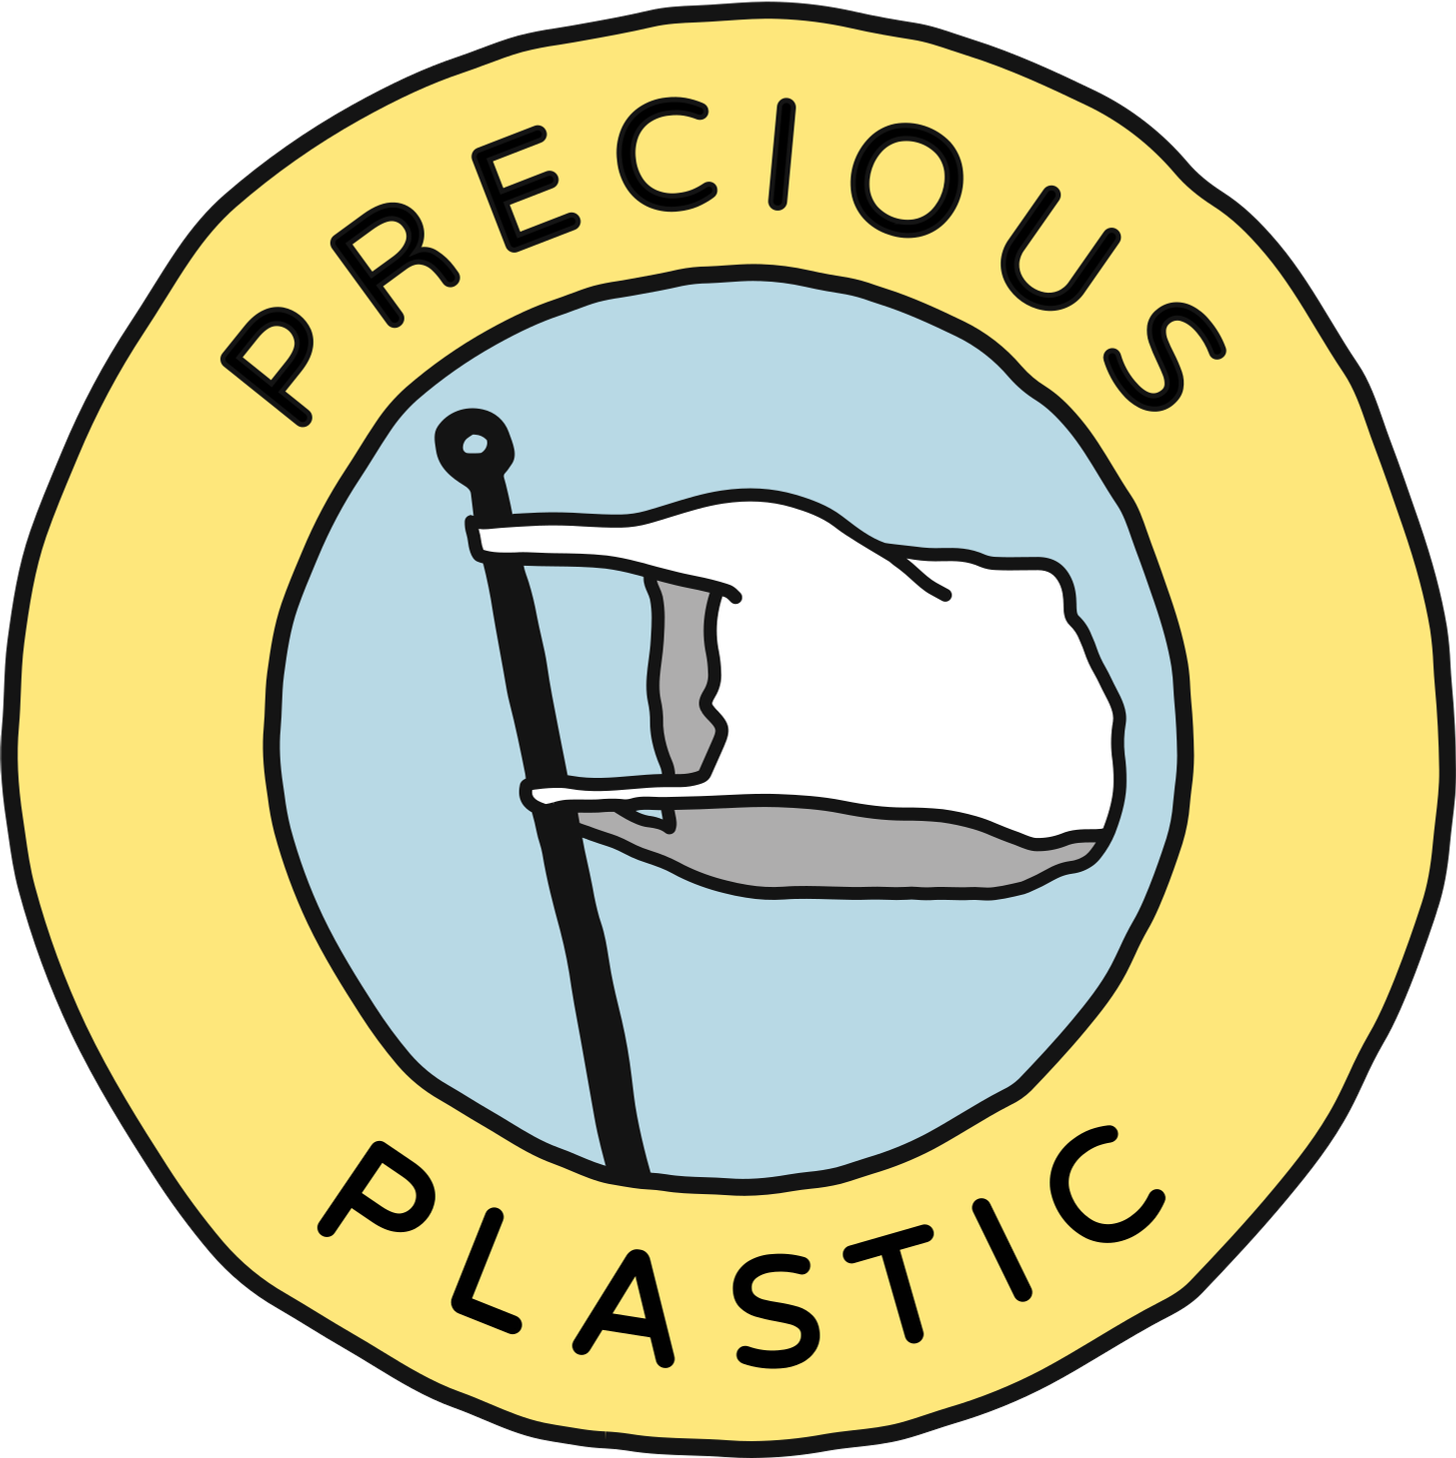 Precious Plastic Logo